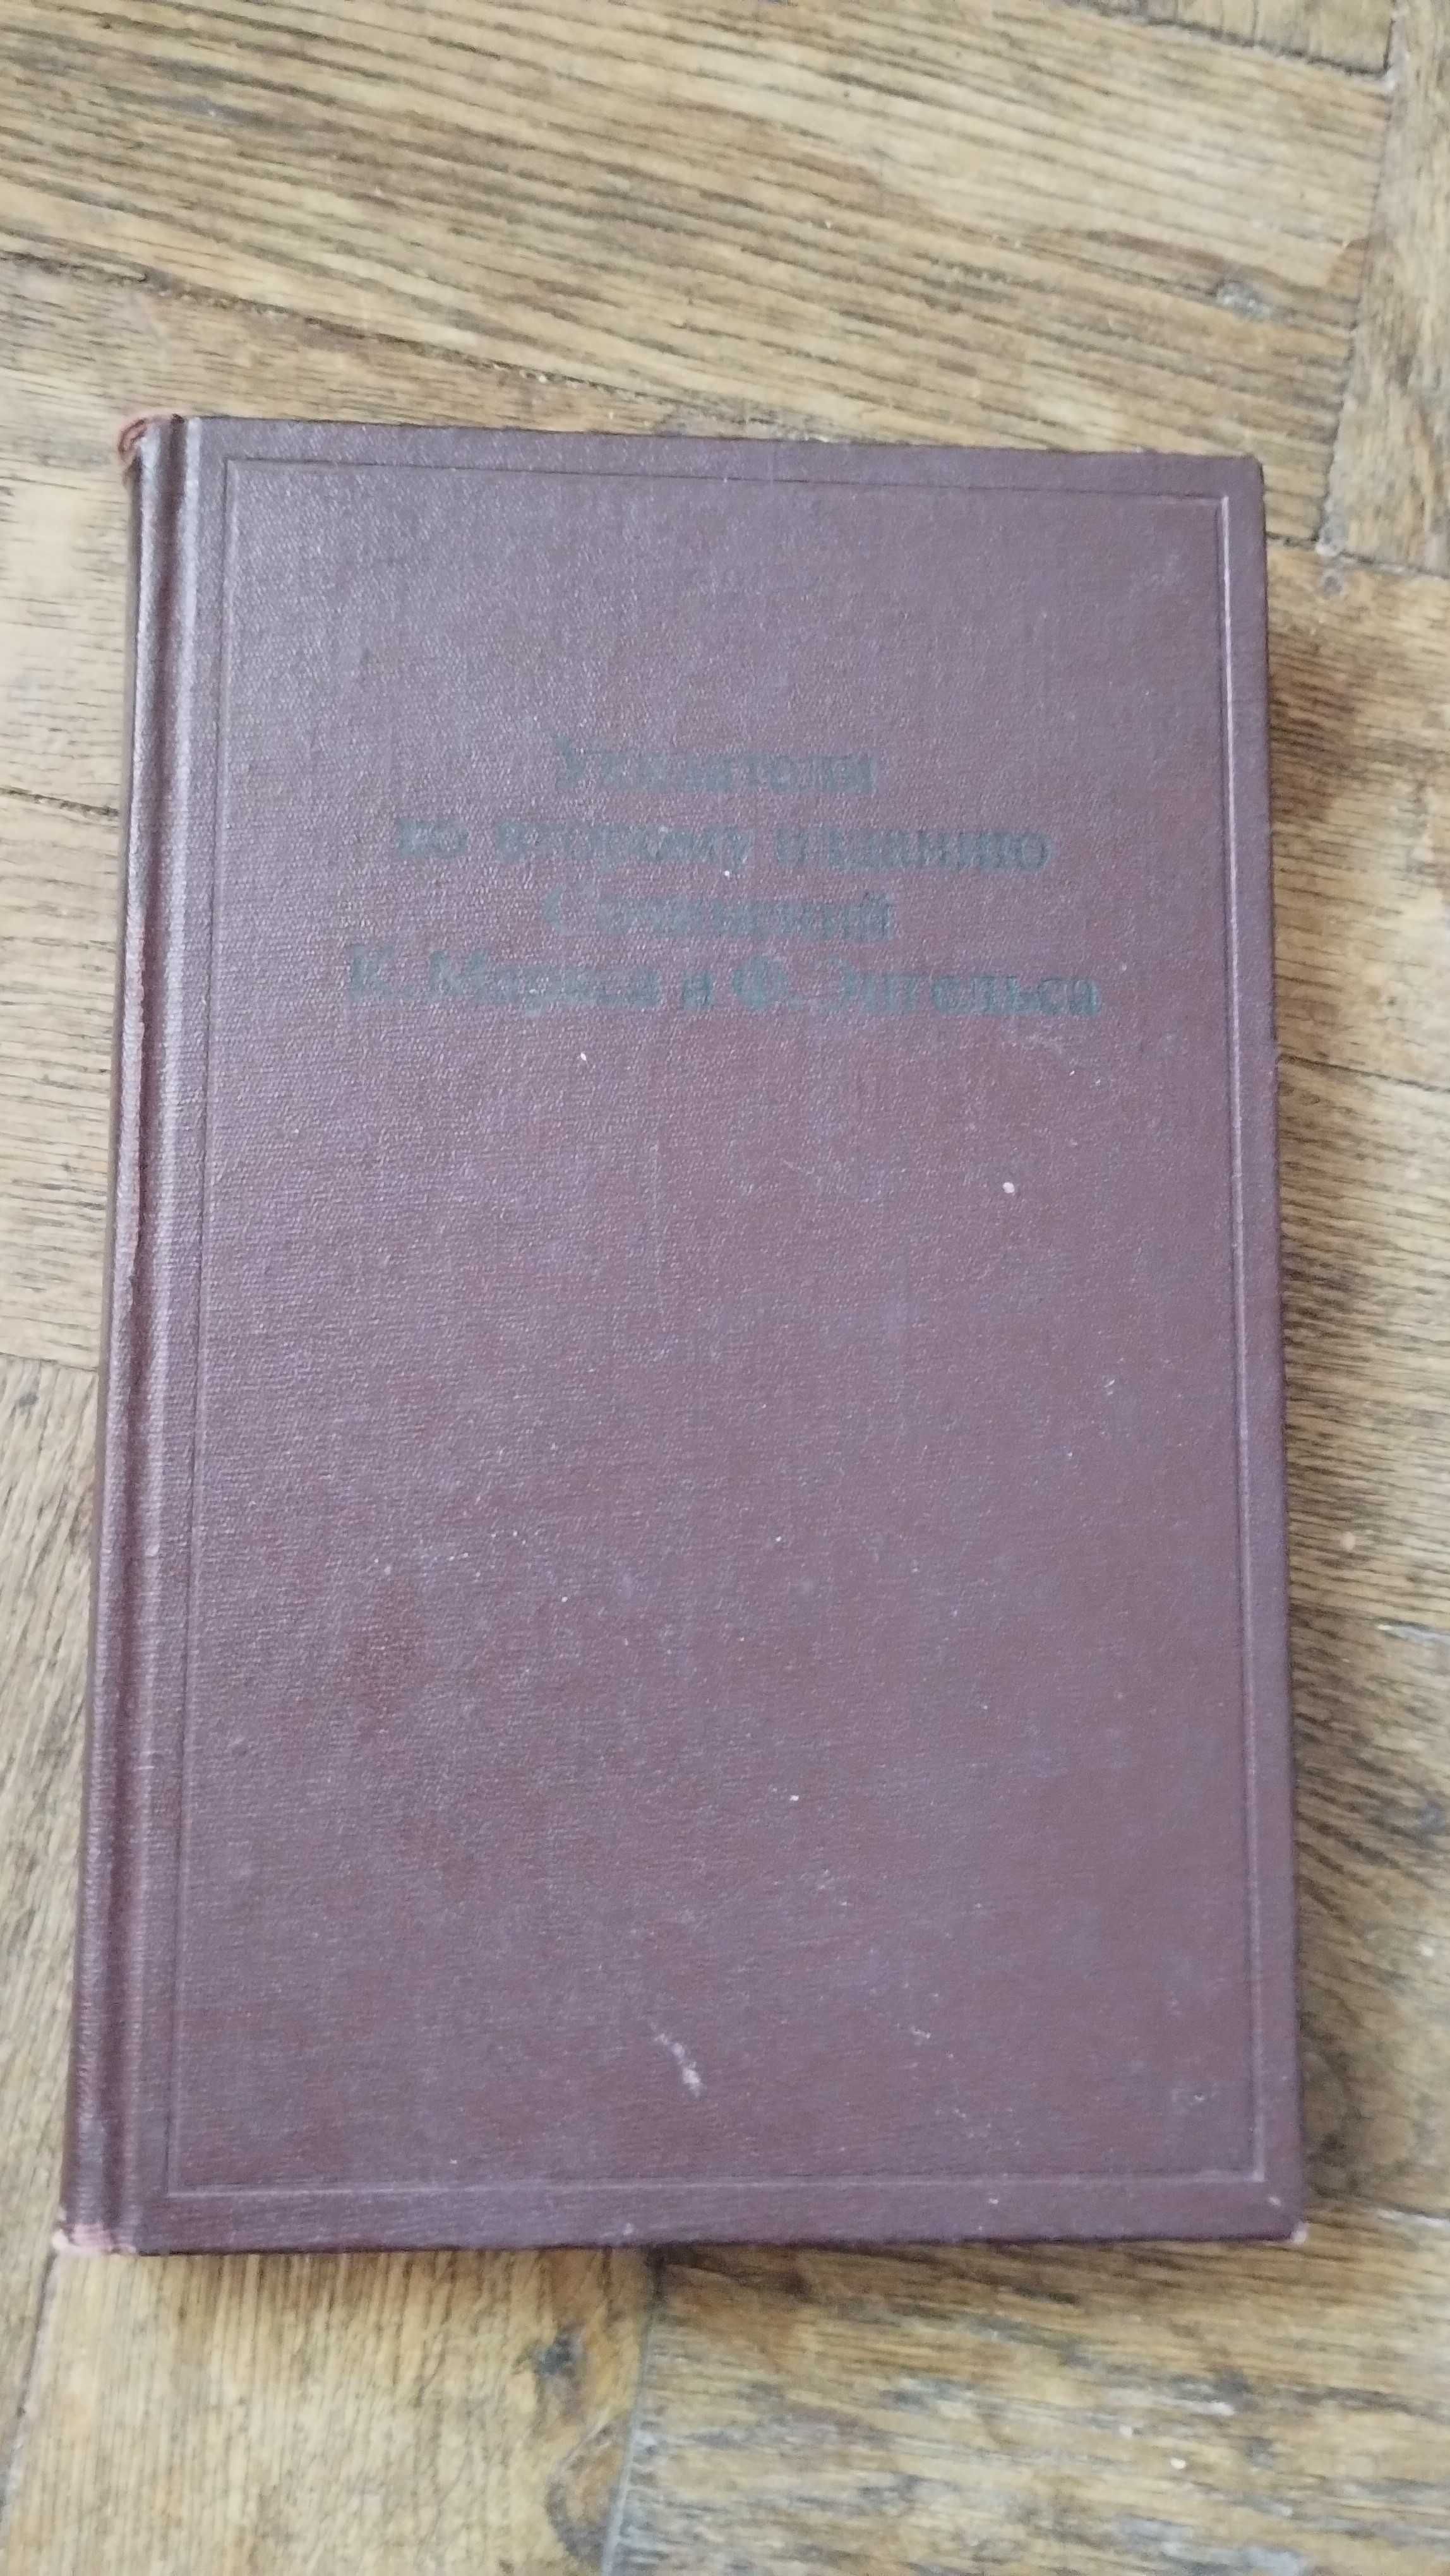 Карл Маркс, Фридрих Энгельс Полное собрание сочинений в 39 томах